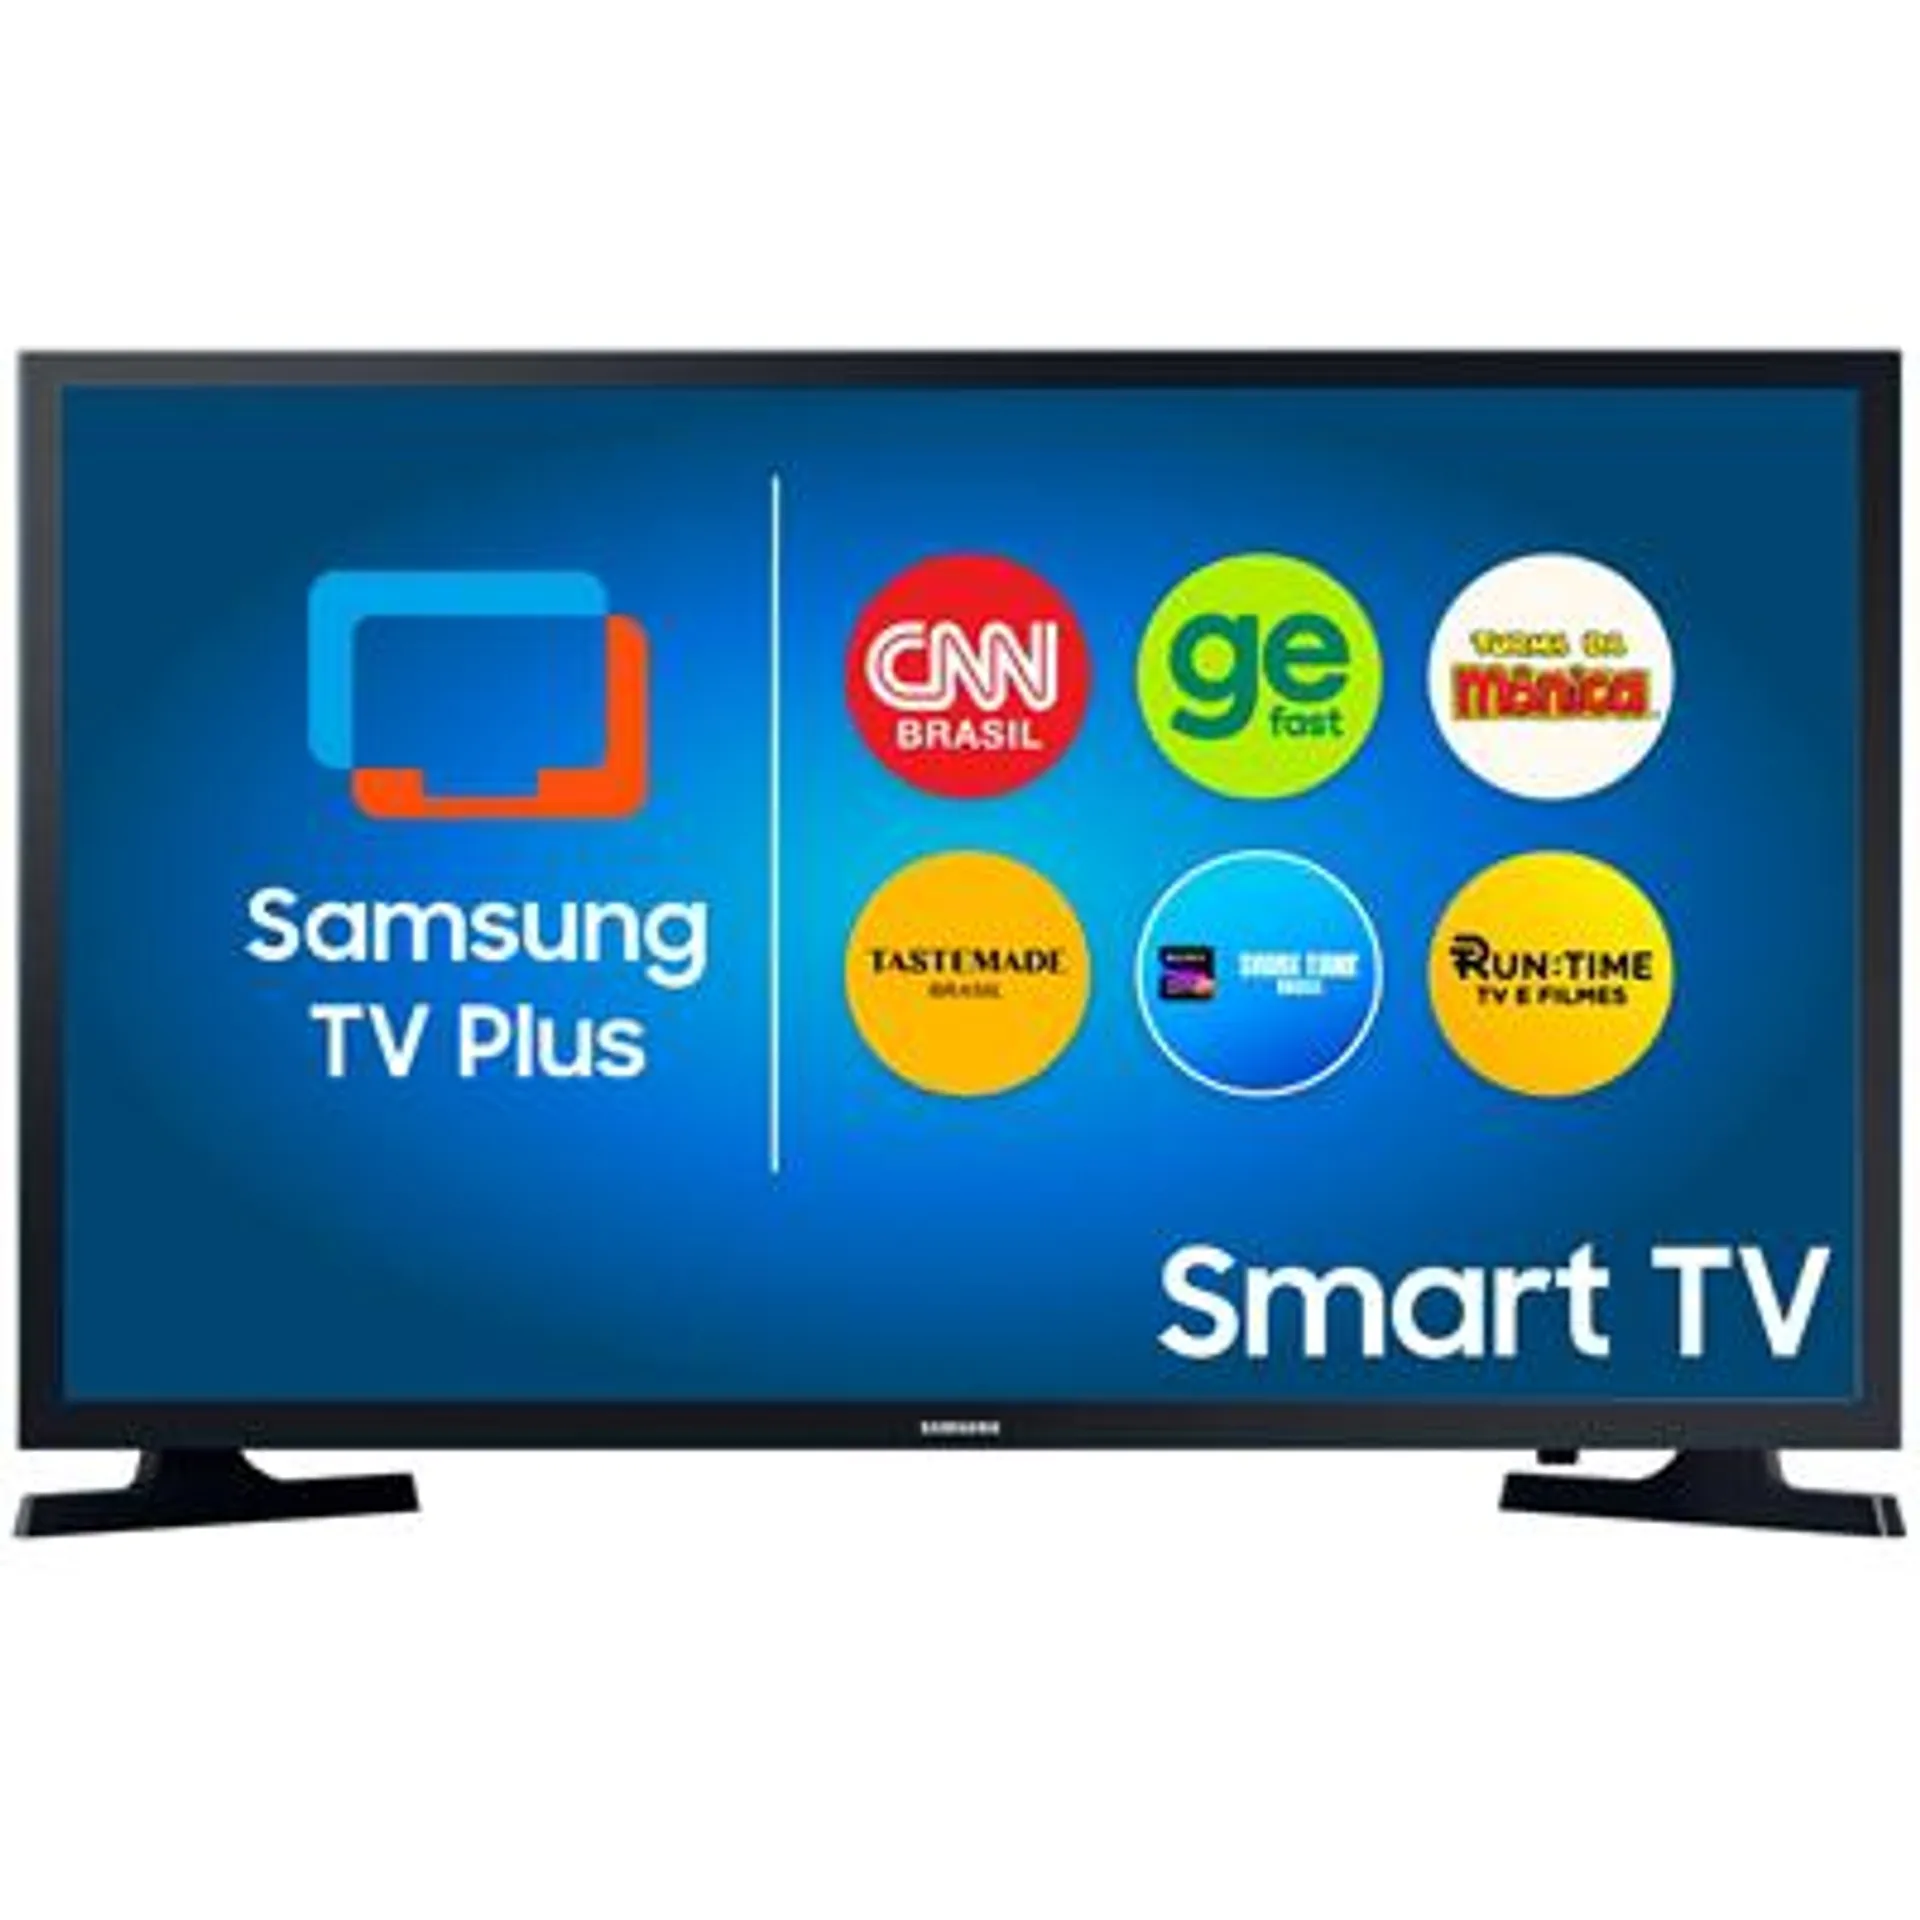 Smart TV Samsung 43” Full HD LED Wi-Fi, HDR e HDMI UN43T5300AGXZD